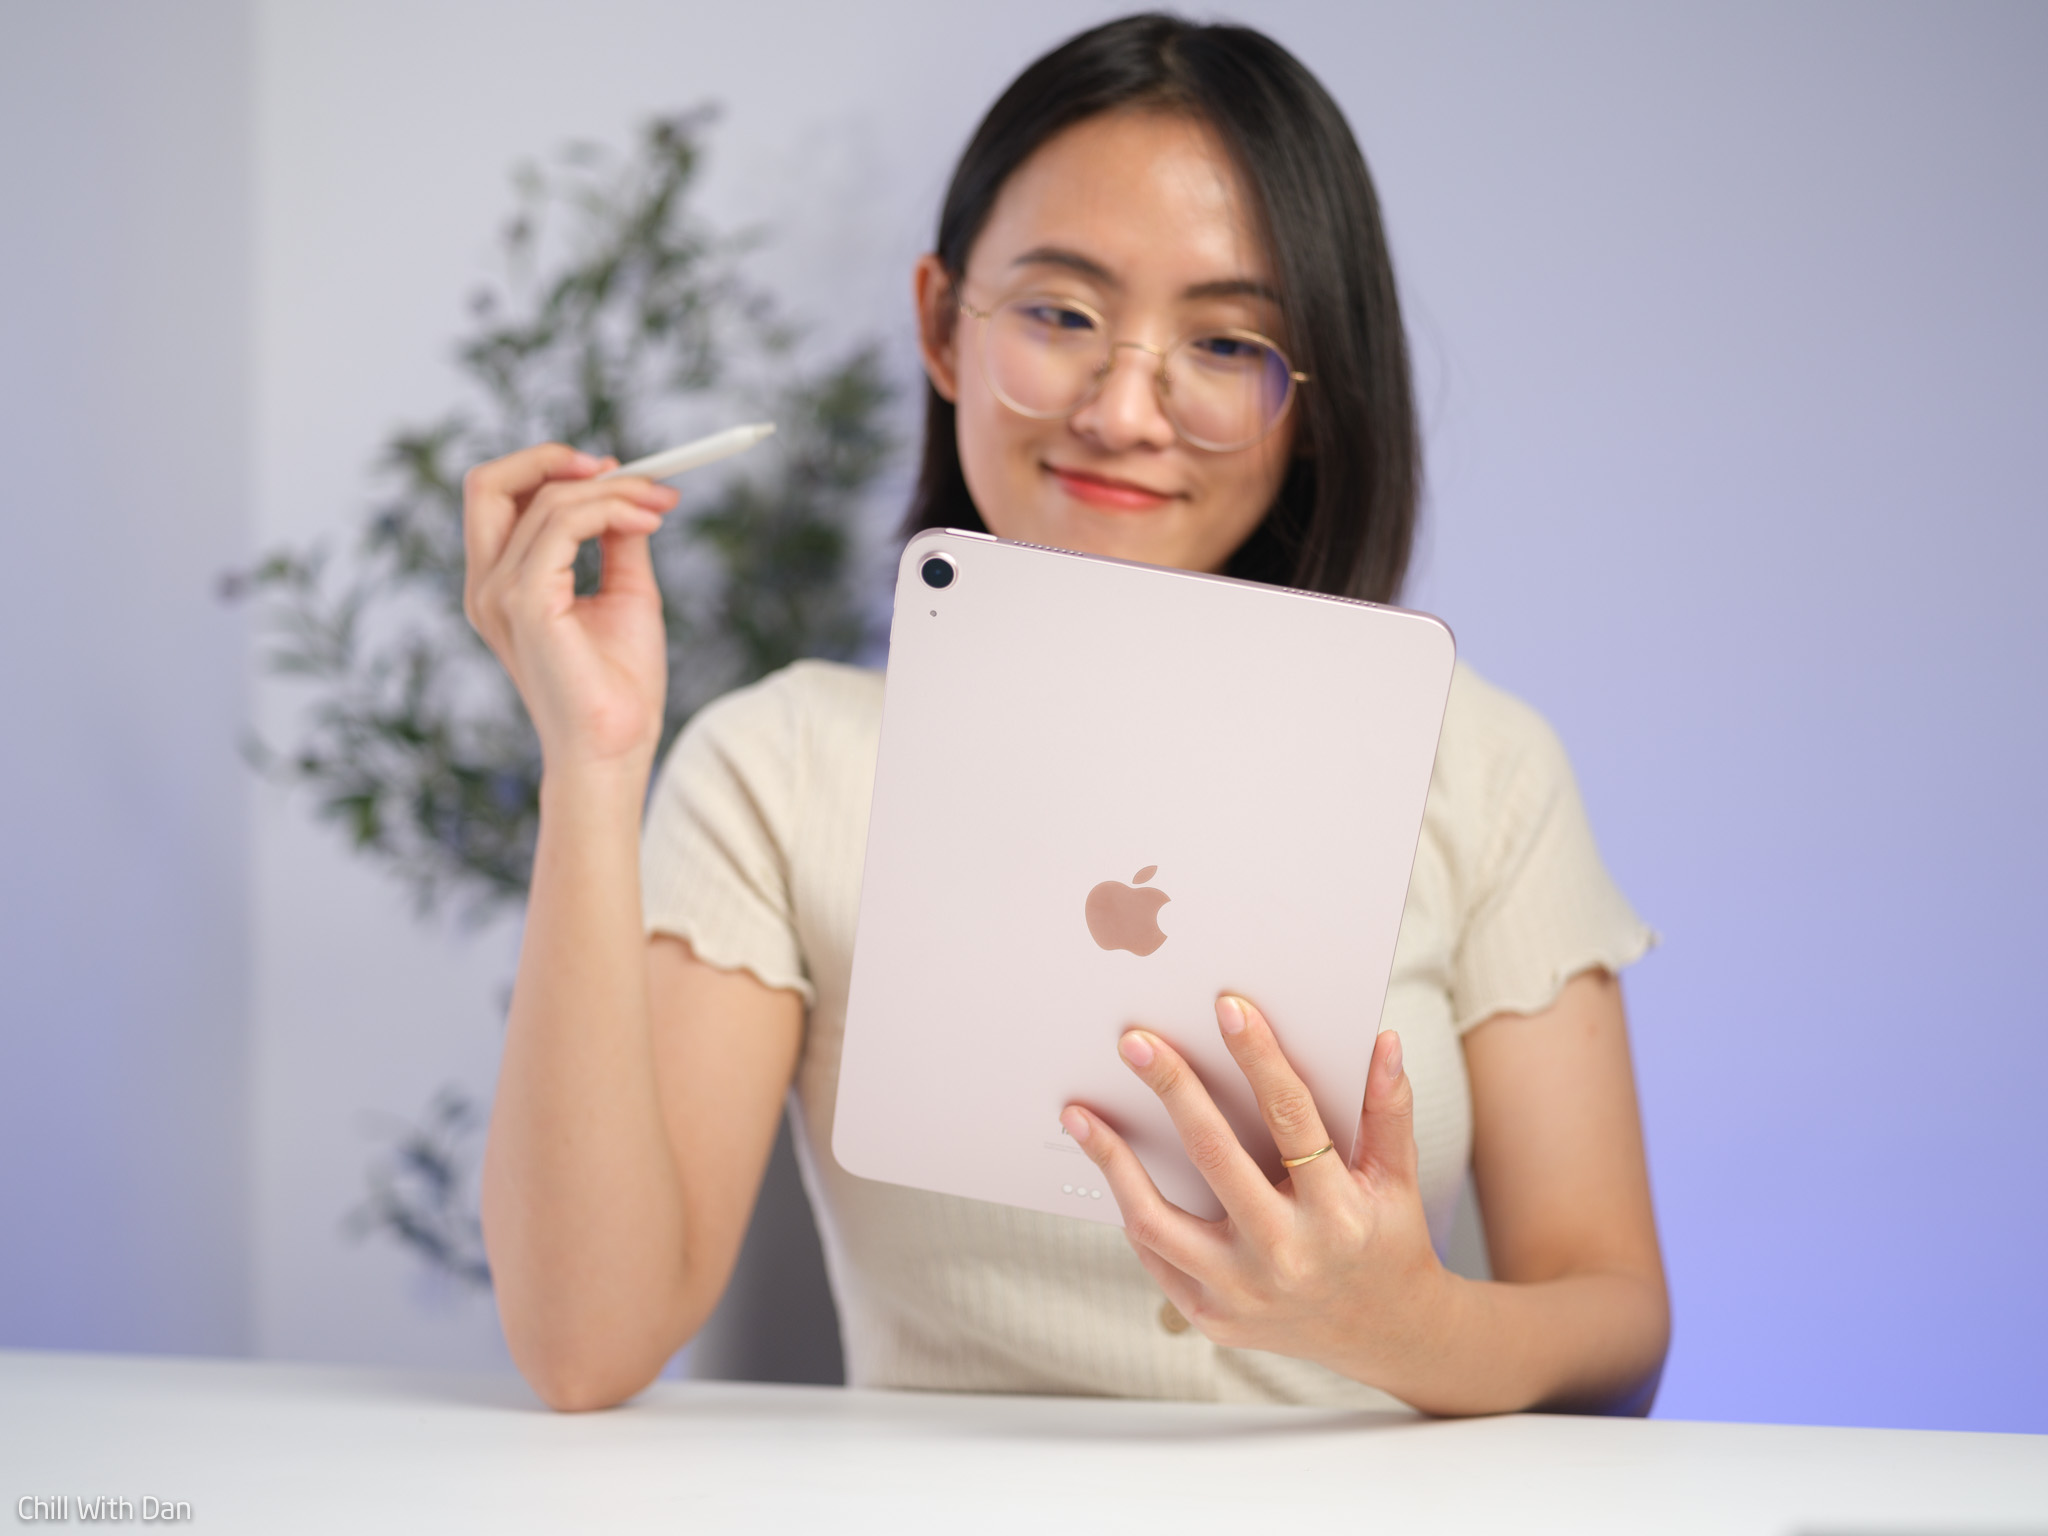 iPad Air 5 màu hồng với chip M1 cho khả năng giải trí và làm việc đạt tốc độ nhanh hơn bao giờ hết. Với màu hồng sang trọng và nét thiết kế tinh tế, iPad Air 5 chắc chắn là lựa chọn hoàn hảo cho các bạn trẻ thời thượng.